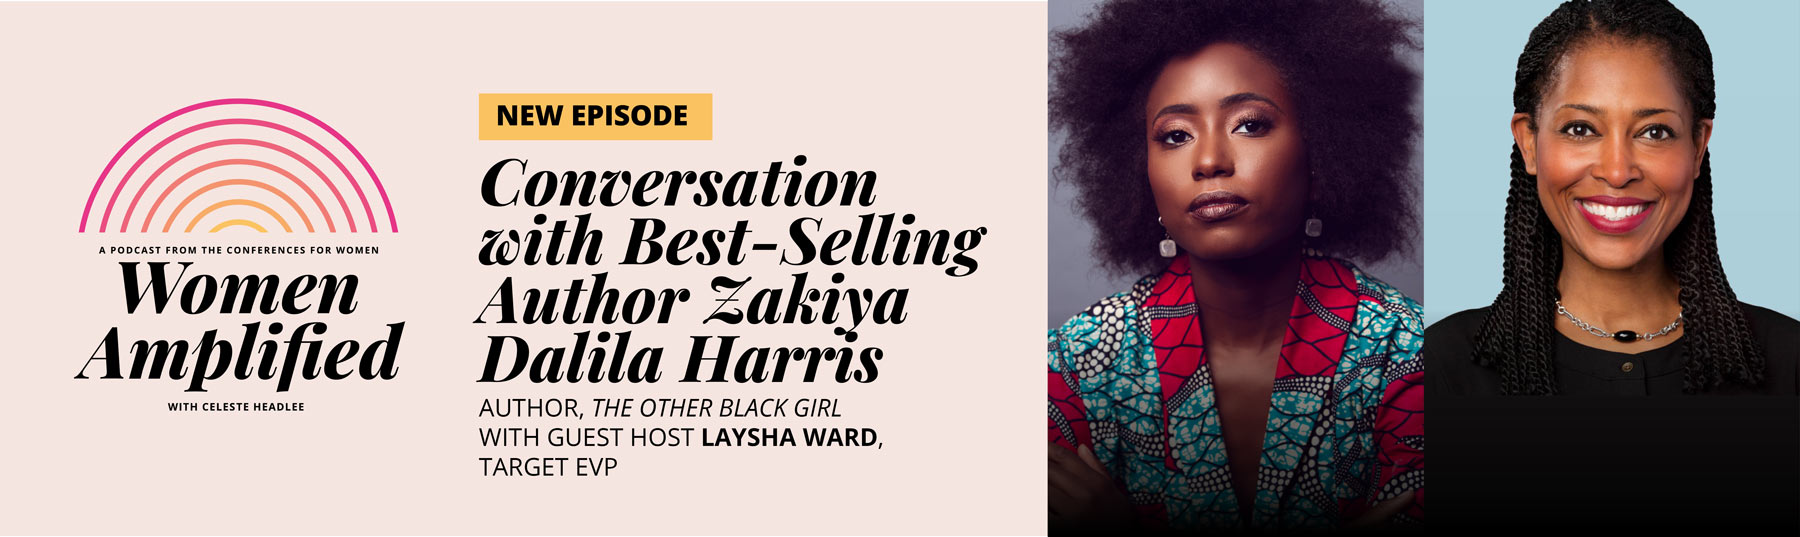 A Conversation with Best-Selling Author Zakiya Dalila Harris and Target EVP Laysha Ward